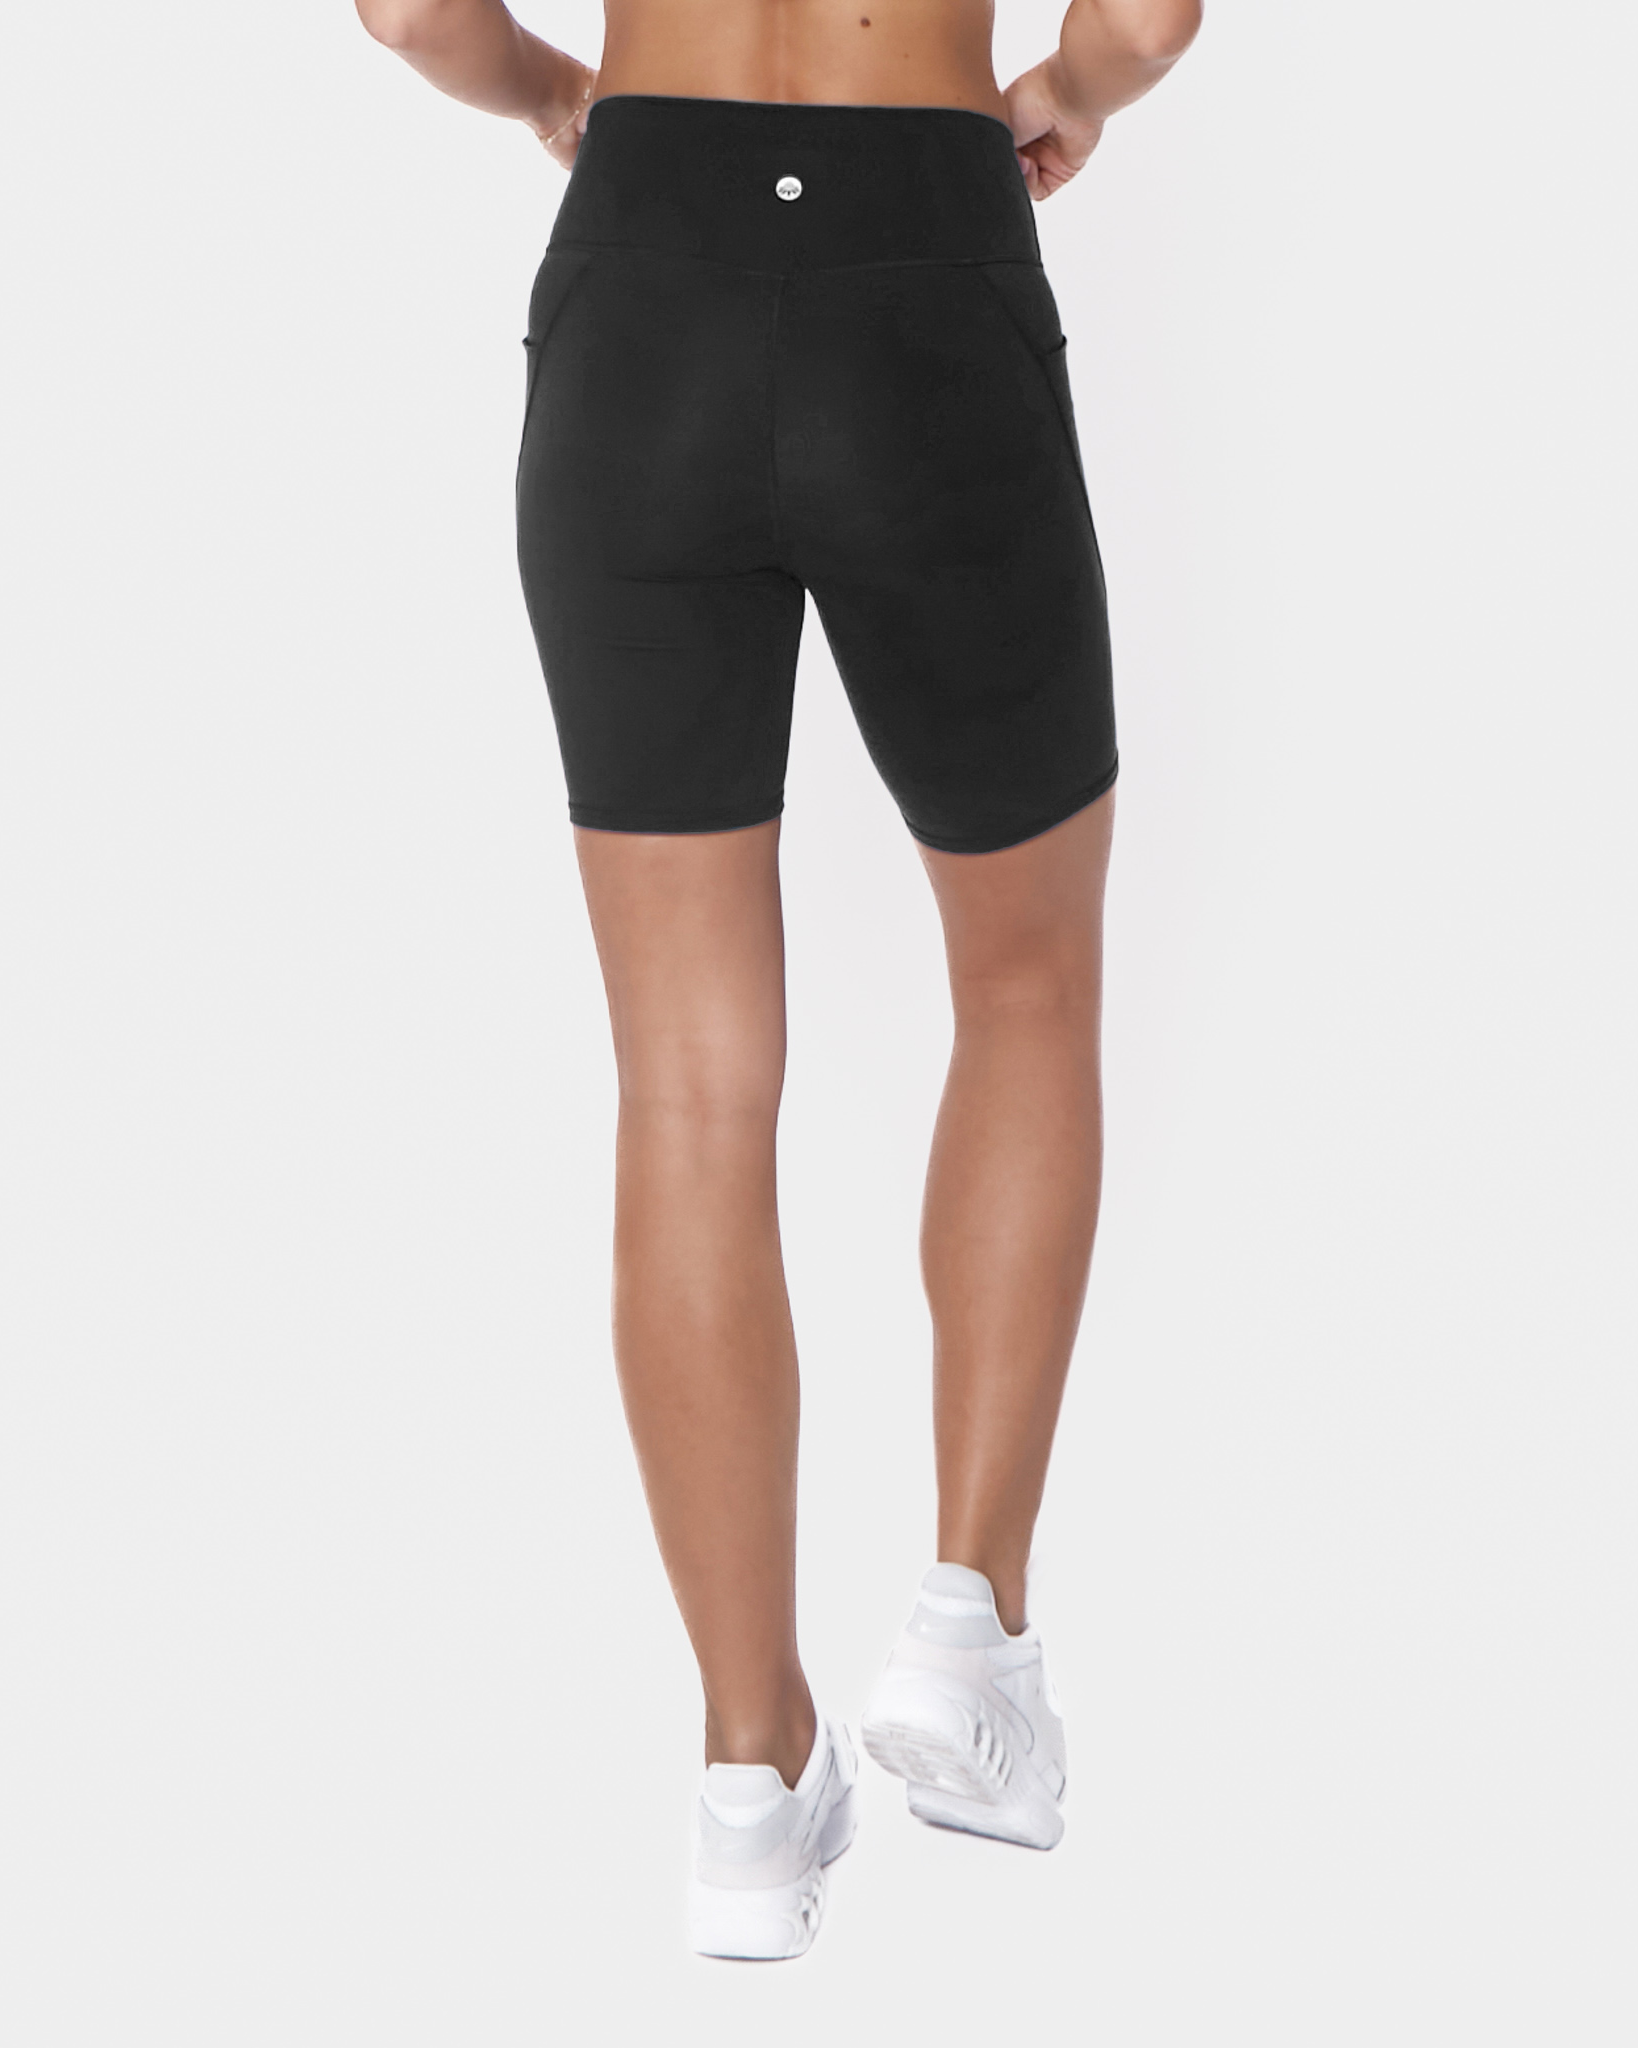 Skin Maternity Biker Shorts (8 in. inseam) - Black